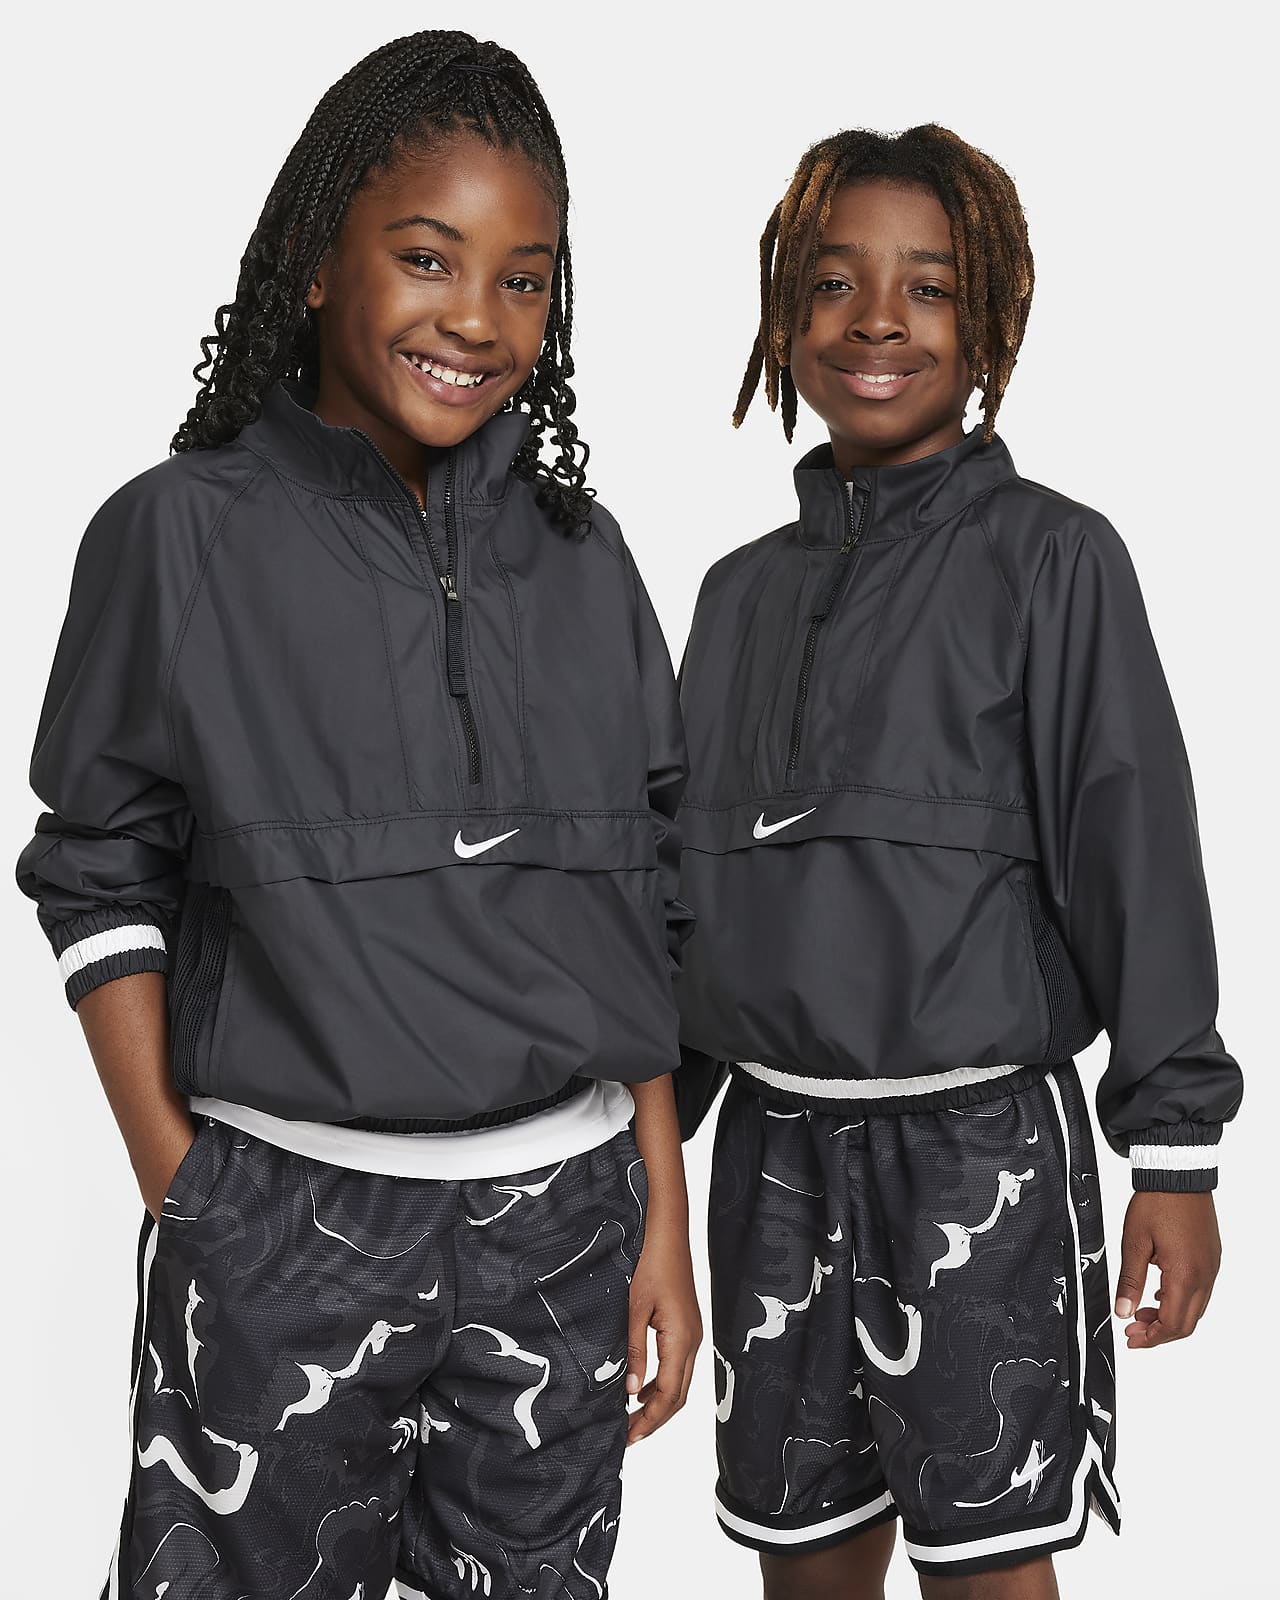 Veste Nike enfants/adolescent à capuche, unisexe taille L bleu gris doublé  noir